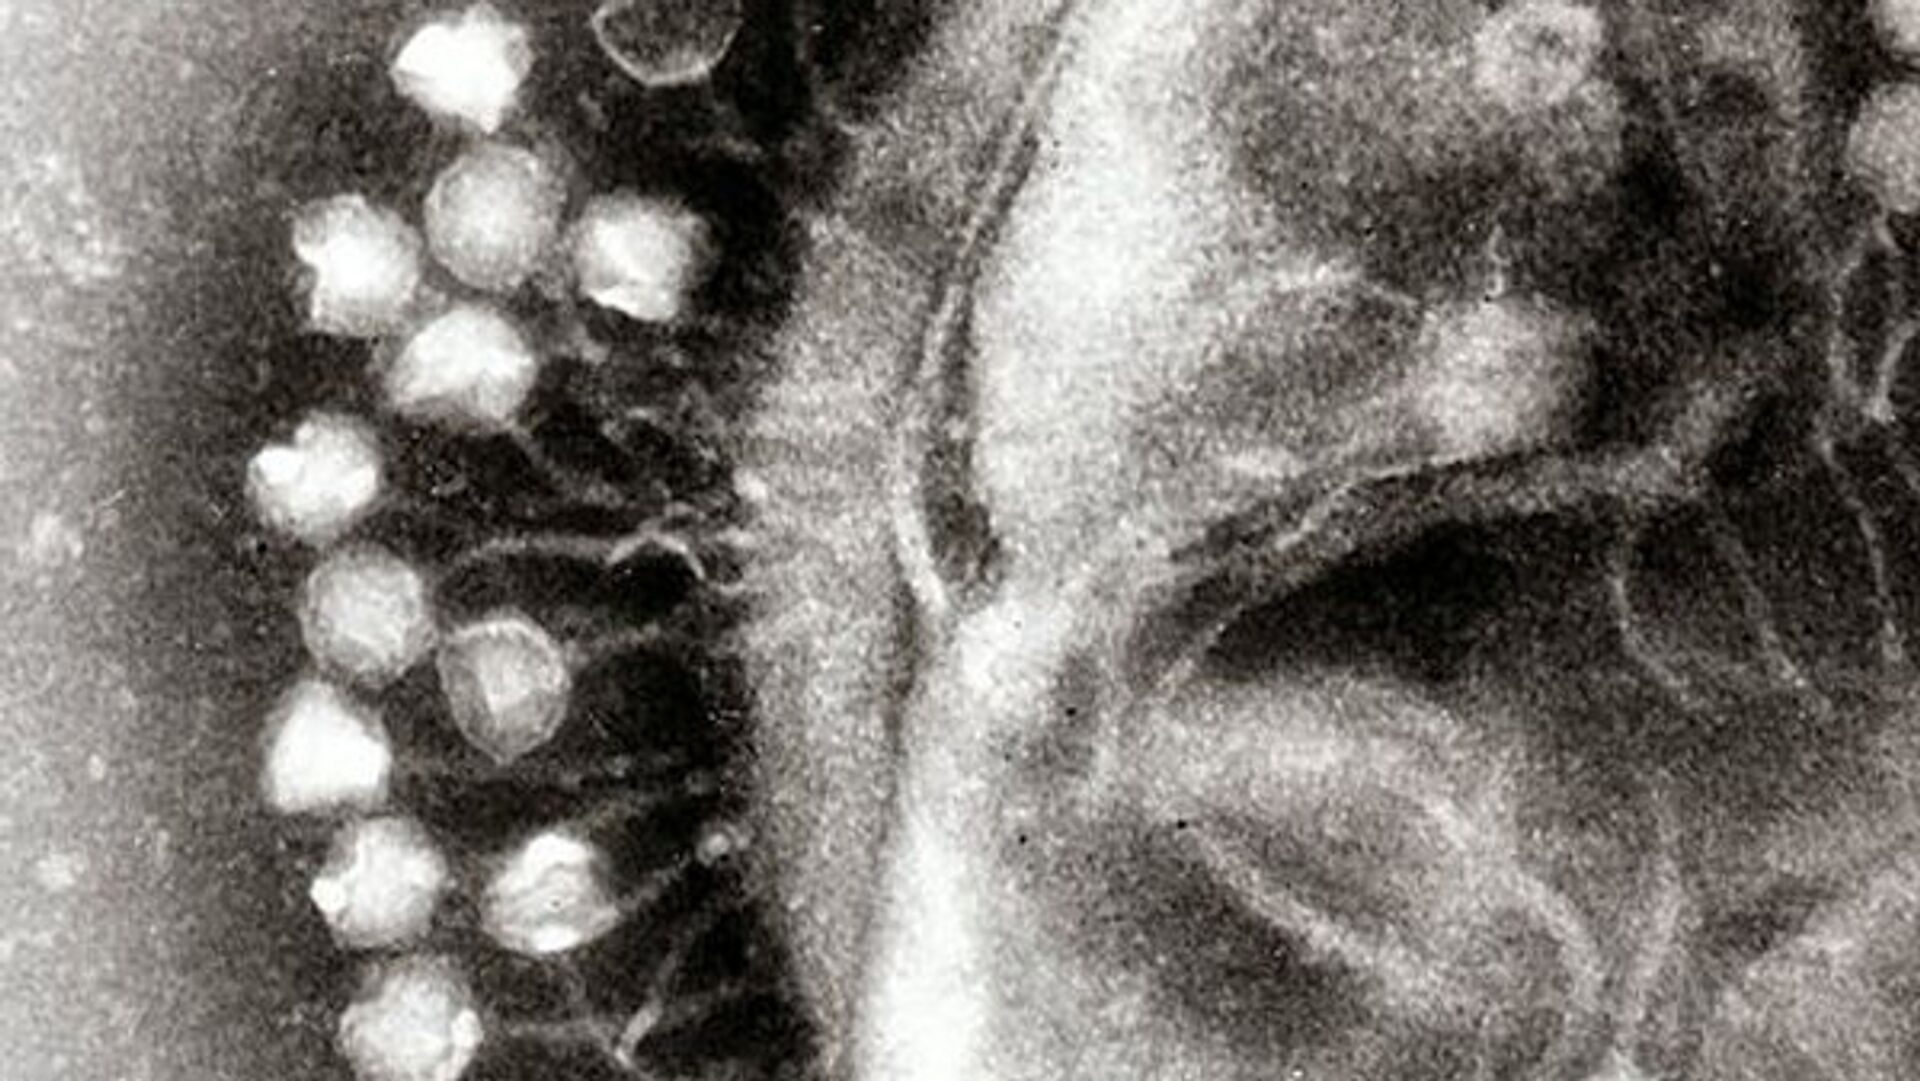 Кластер бактериофаги, вирусы, которые эволюционировали - РИА Новости, 1920, 18.02.2021